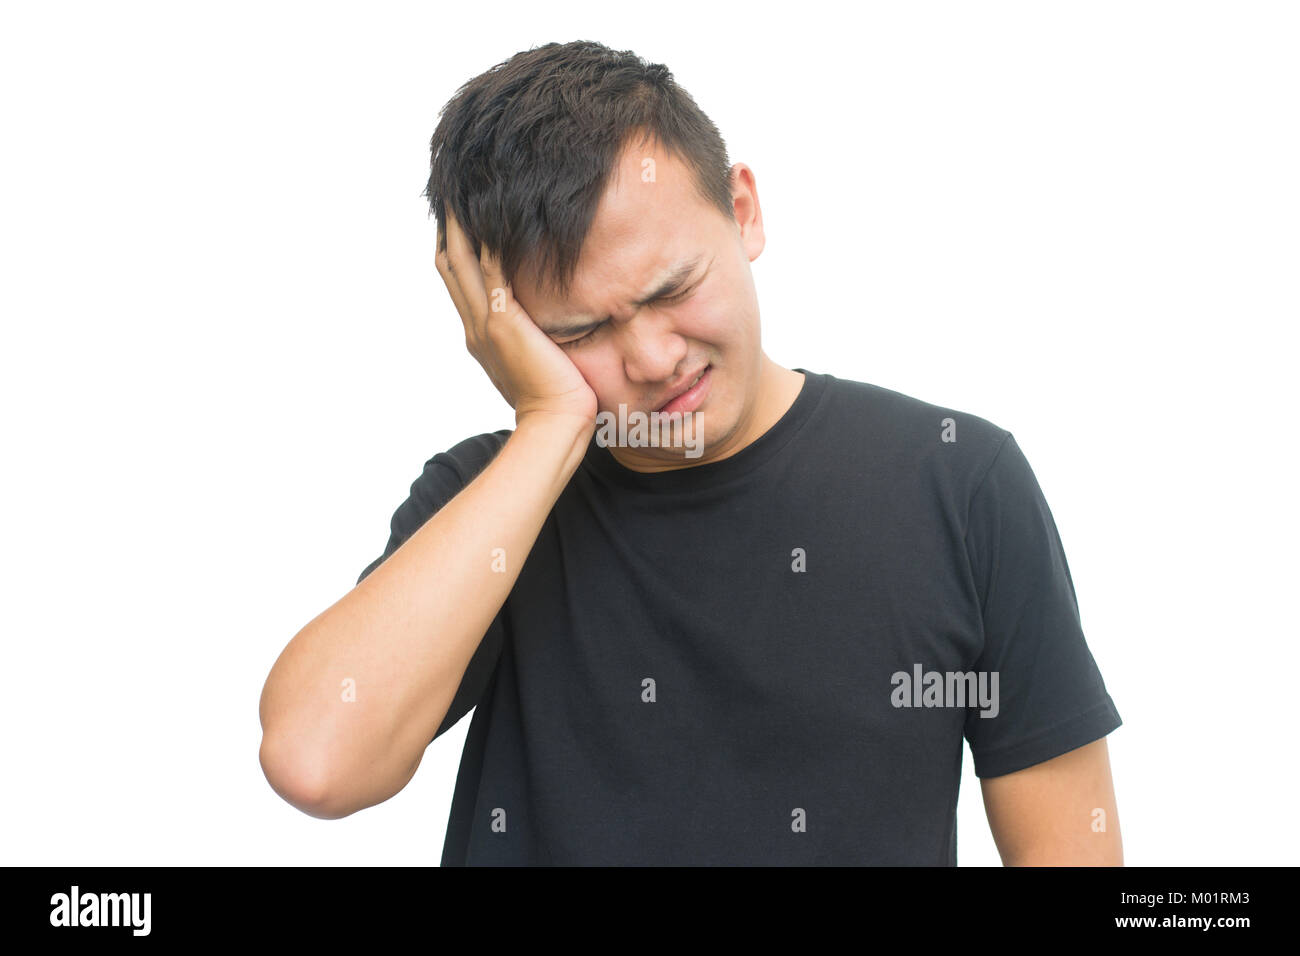 Frustrati giovane con un mal di testa - Isolato su sfondo bianco con tracciato di ritaglio Foto Stock